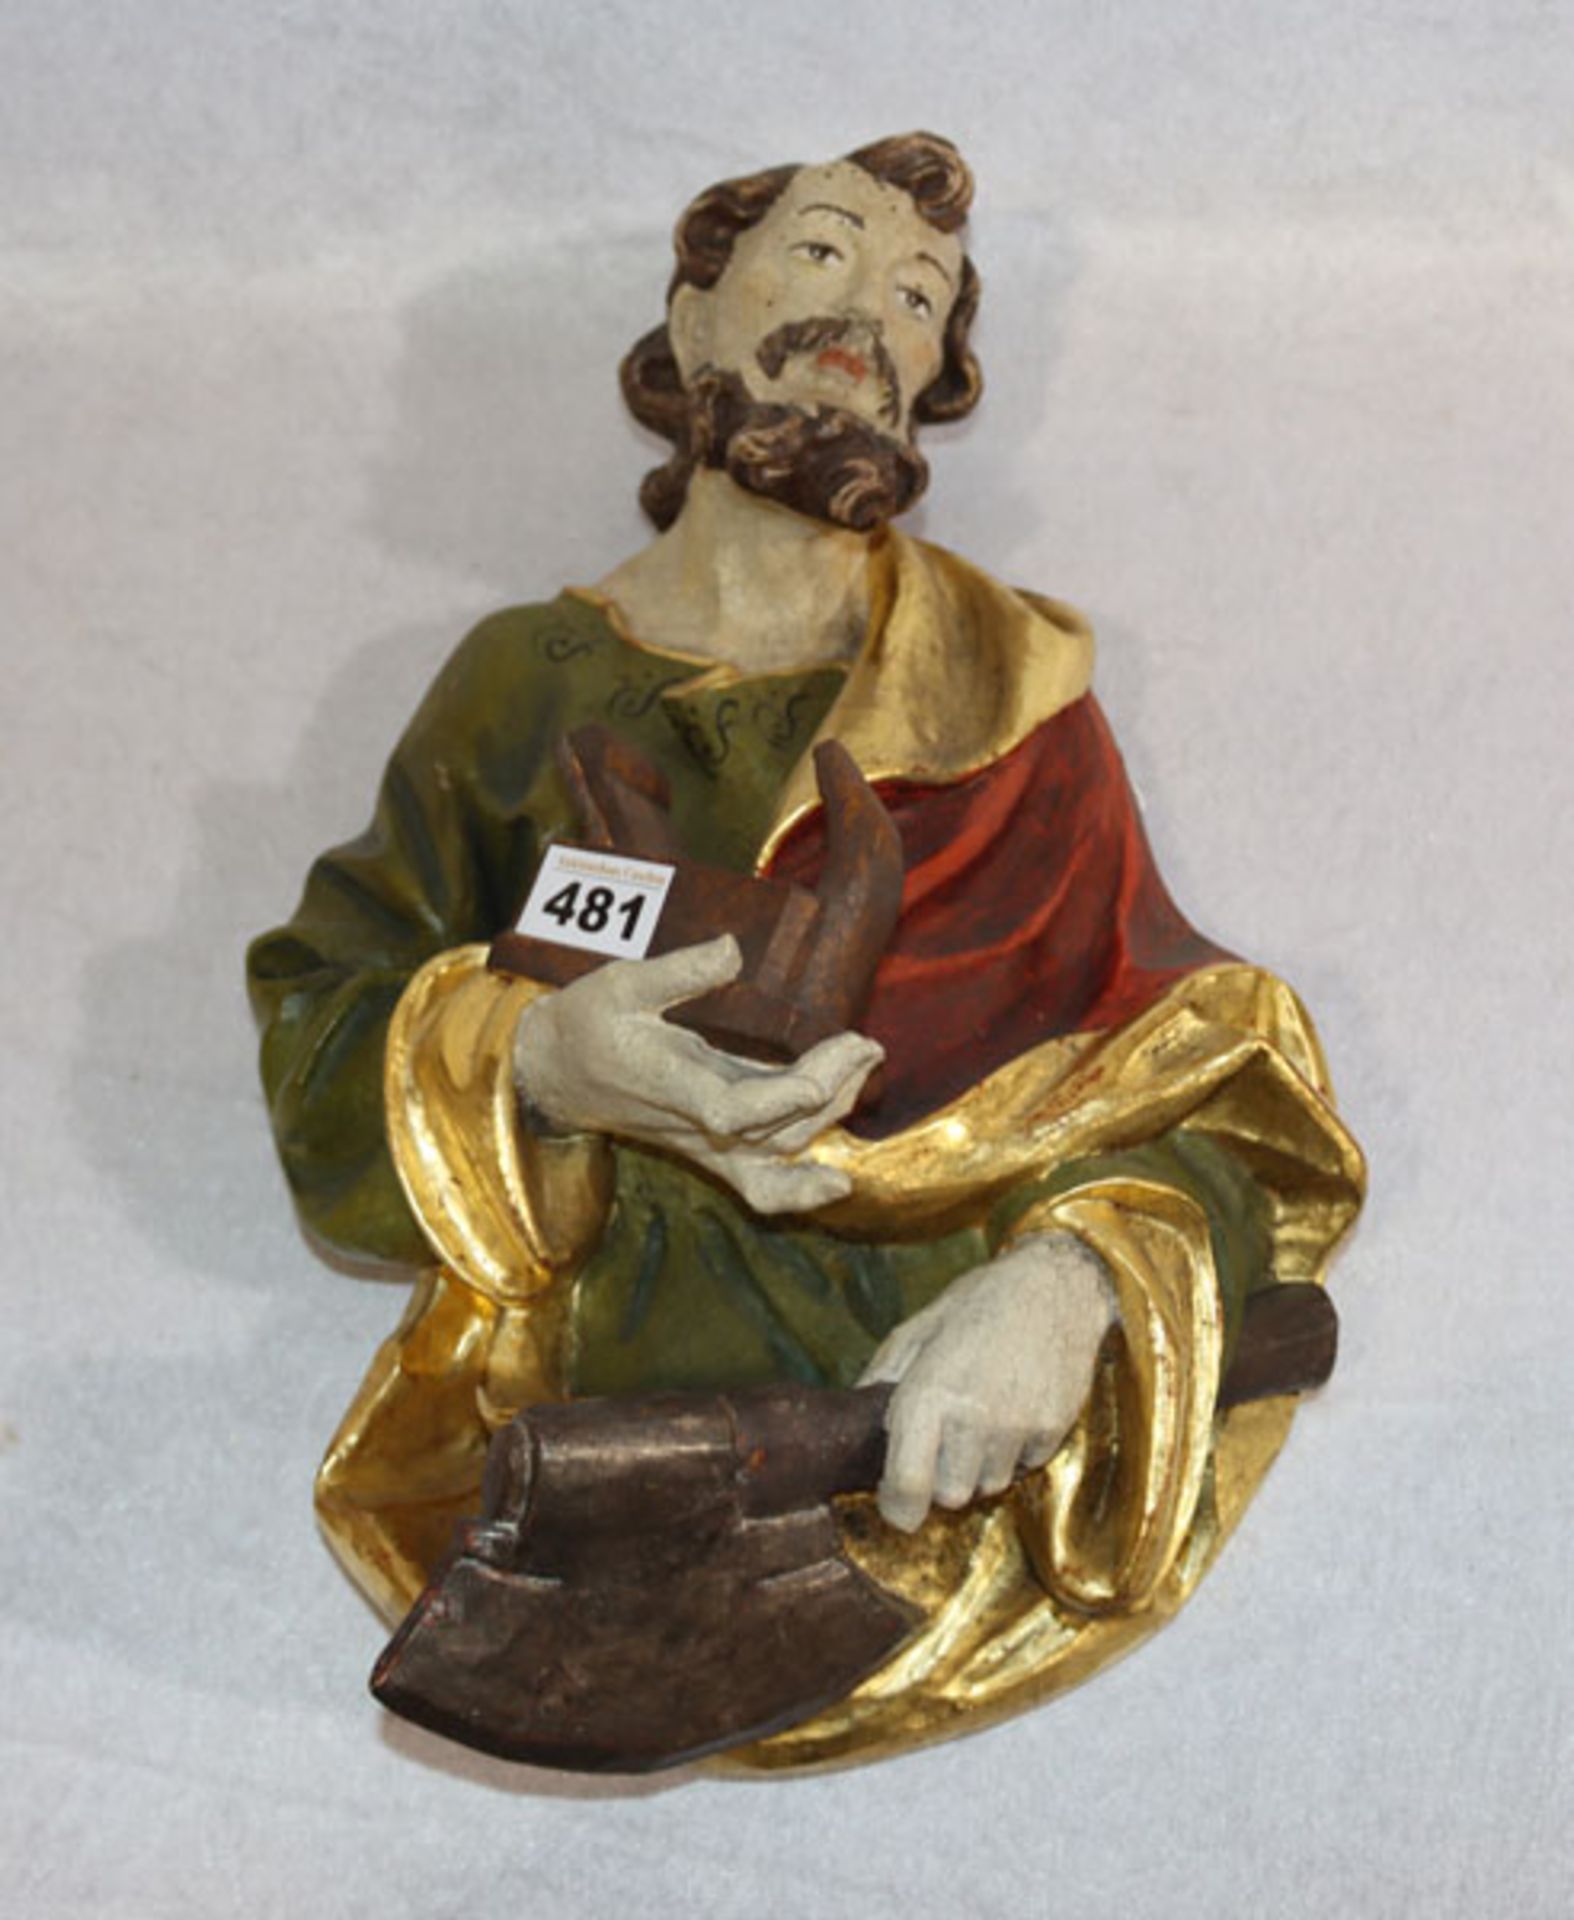 Holz Wandrelief 'Heiliger Josef', farbig gefaßt, rückseitig mit Klebeetikett Holzschnitzerei W.- und